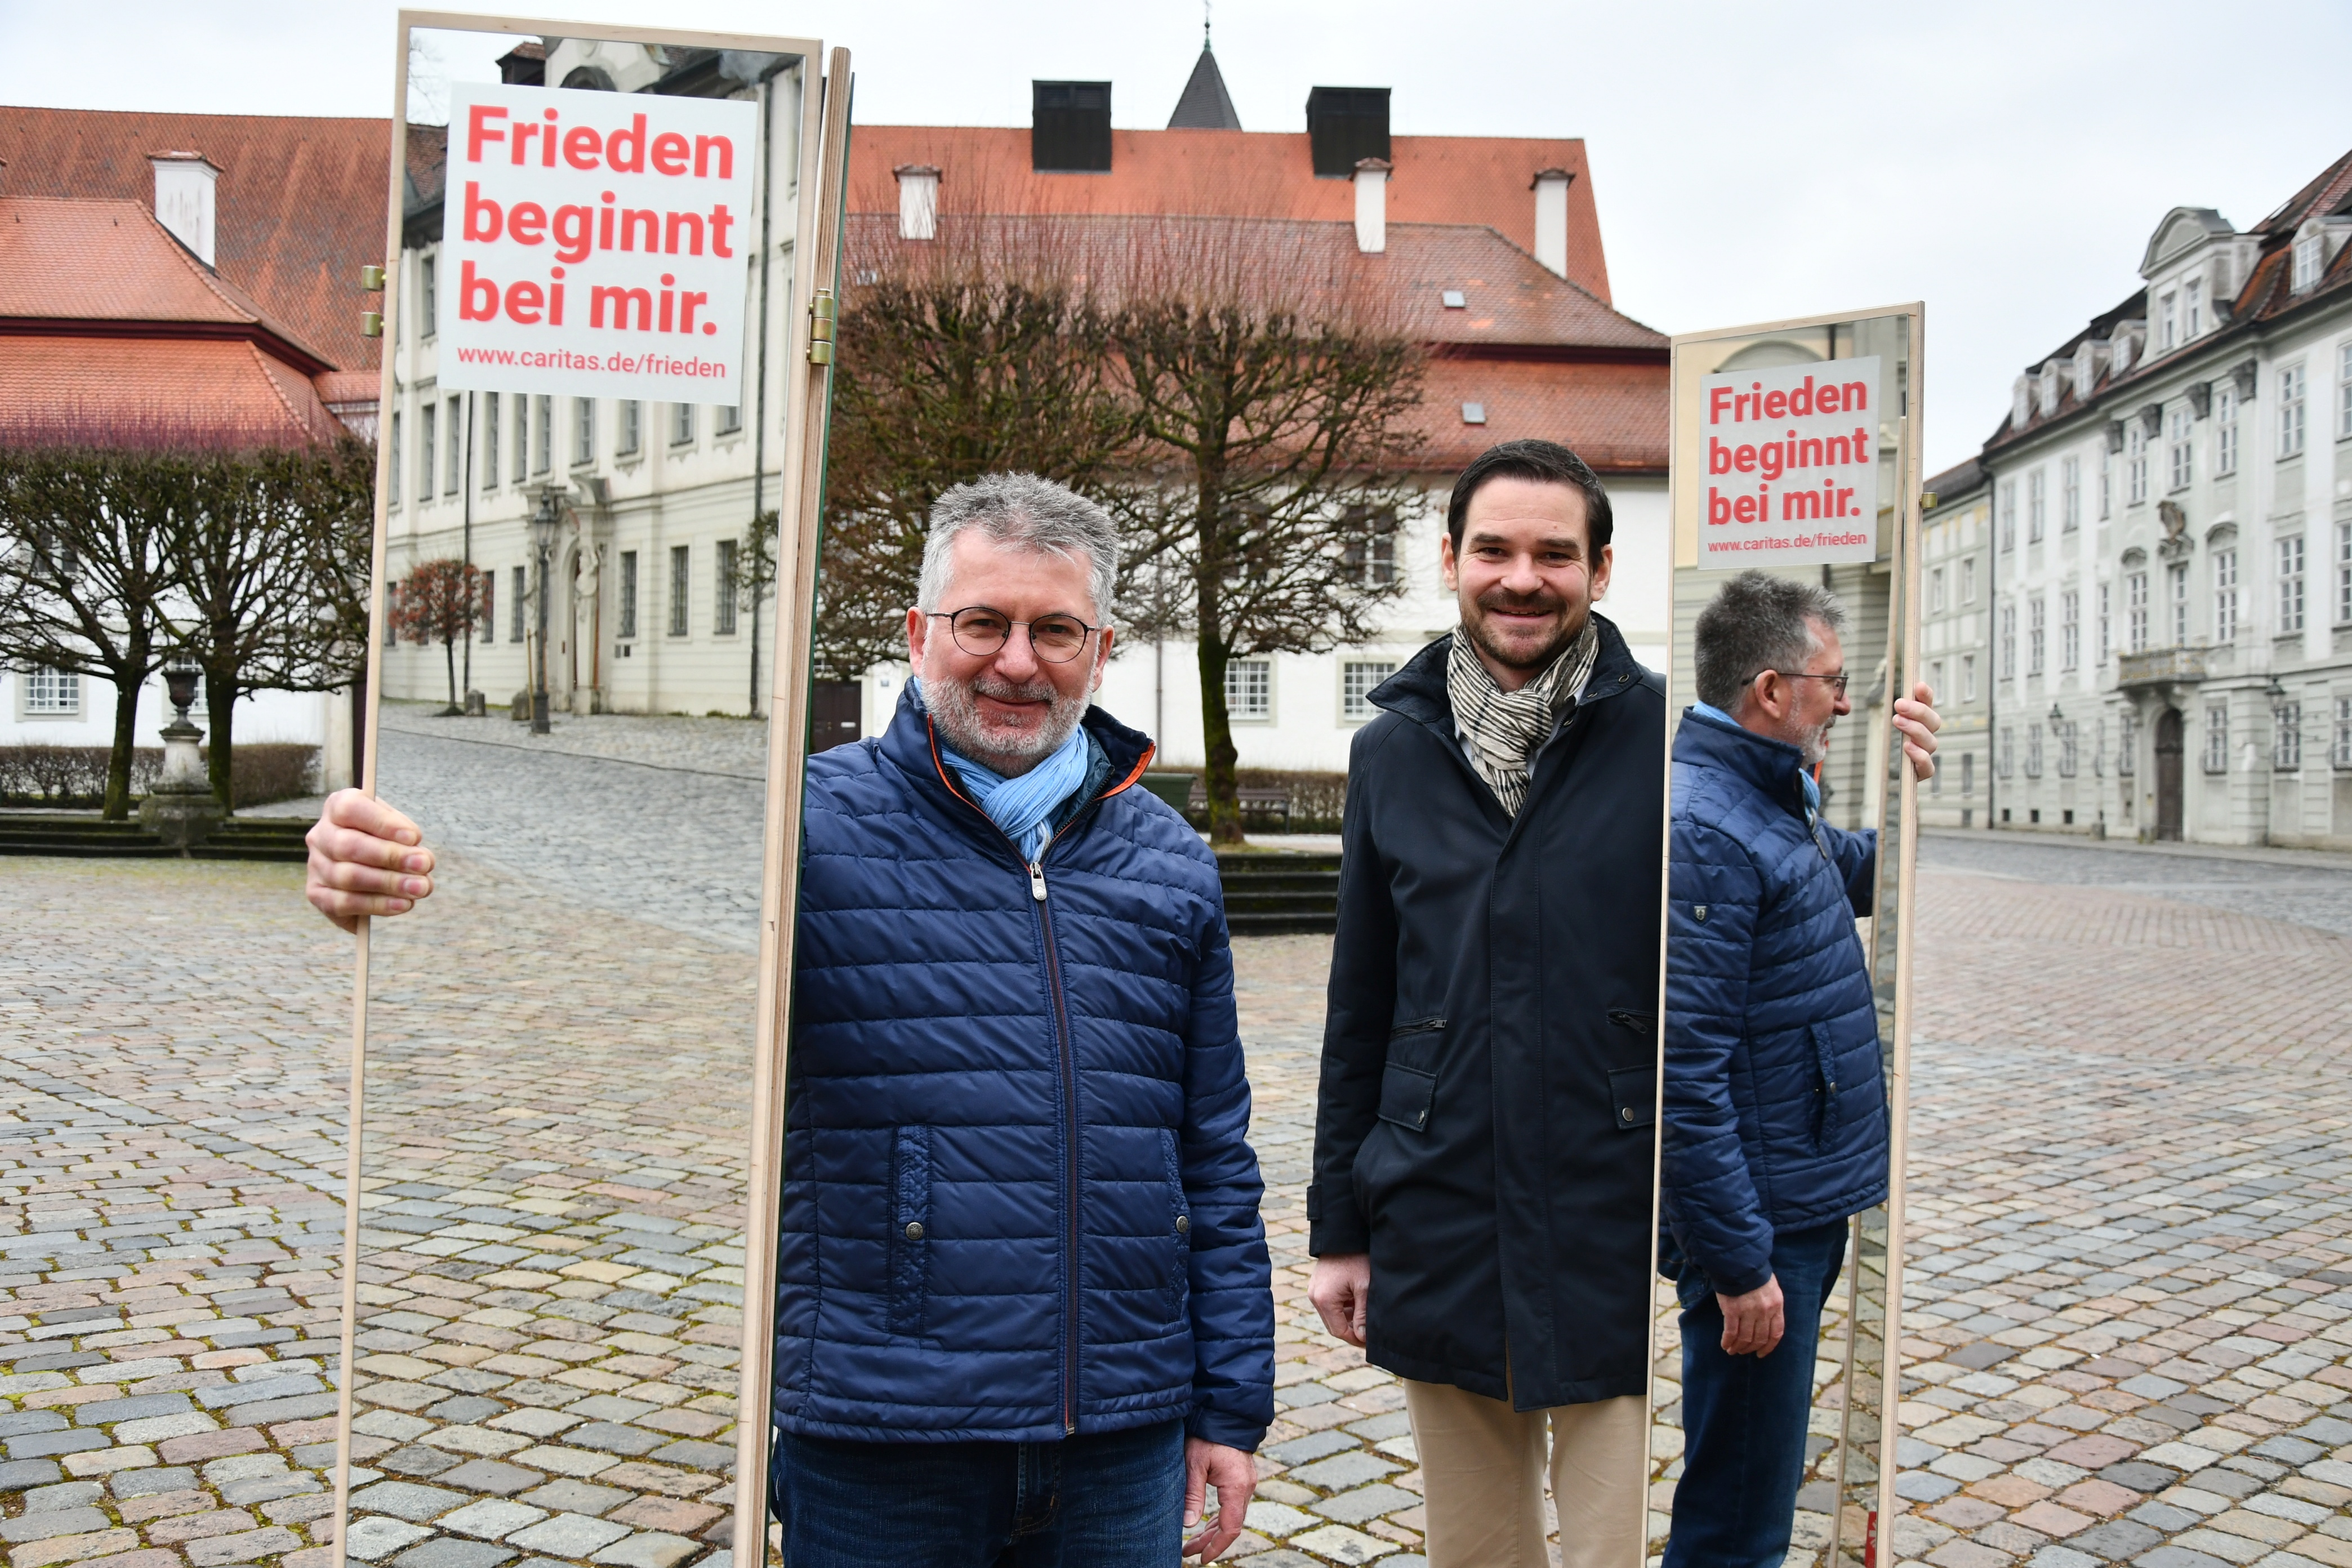 Caritasdirektor Alfred Frank (links) und sein Stellvertreter Andreas Steppberger unterstützen die bundesweite Kampagne „Frieden beginnt bei mir“.